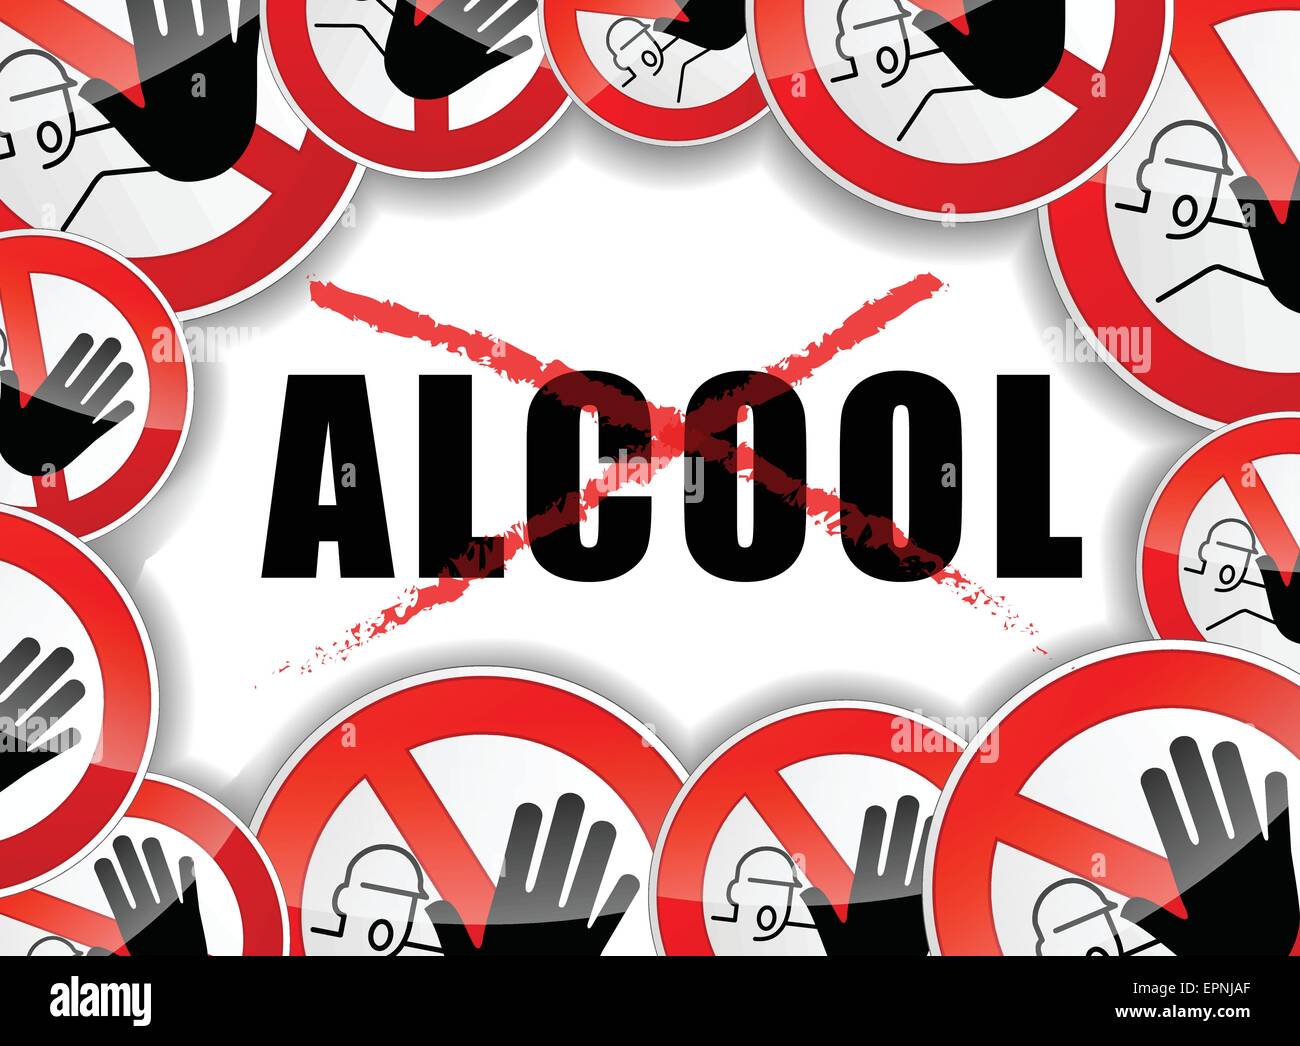 französische Übersetzung für Stop Alcool abstrakte Abbildung Stock Vektor